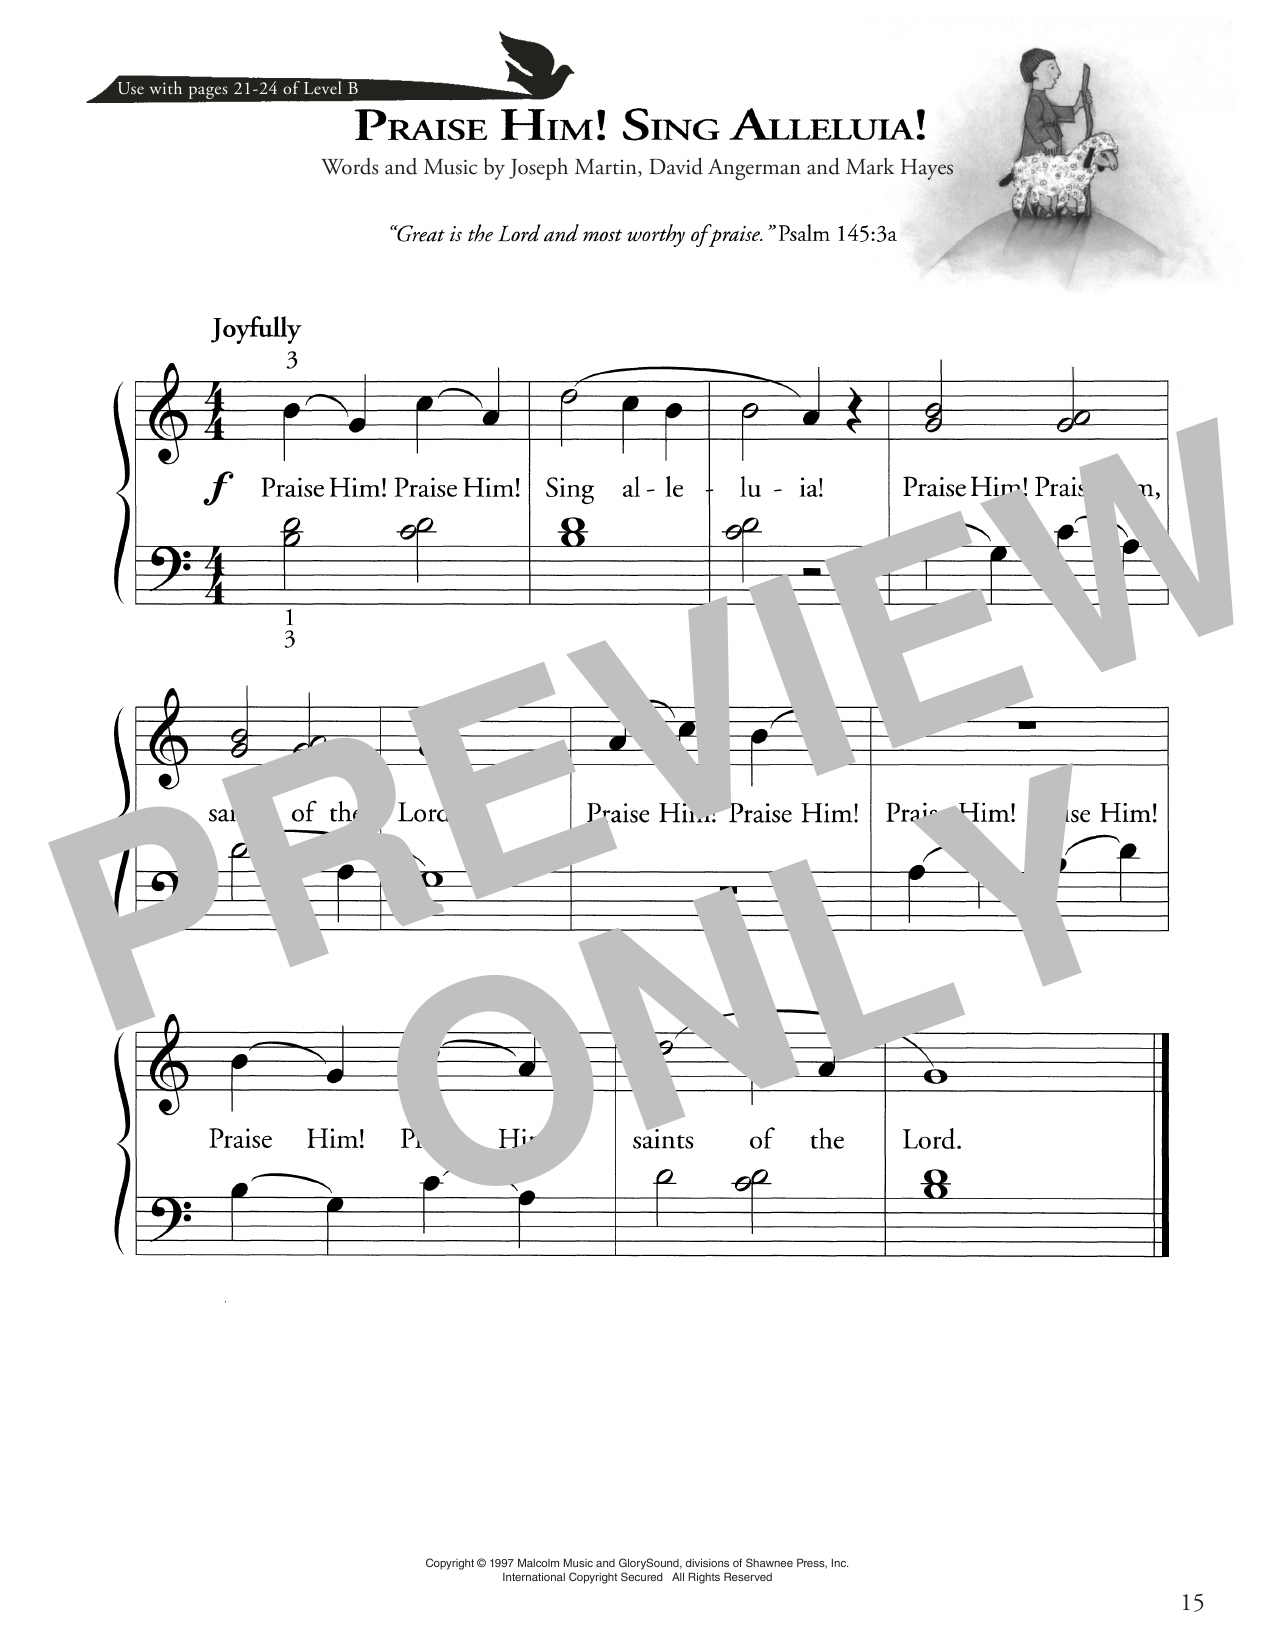 Download Joseph Martin, David Angerman and Ma Praise Him! Sing Alleluia! Sheet Music